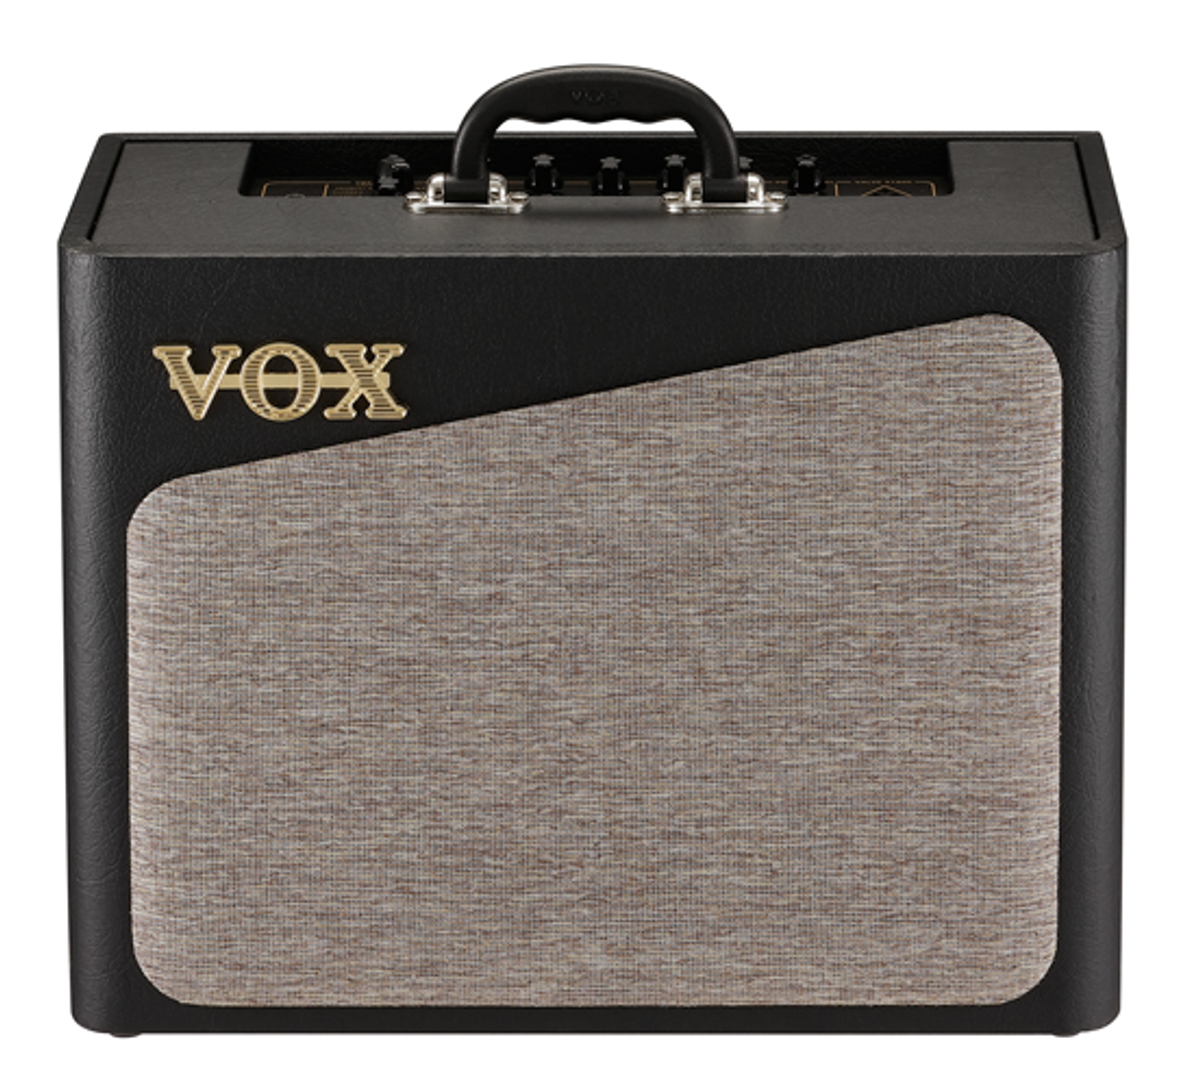 Vox Launches AV Series of Amps